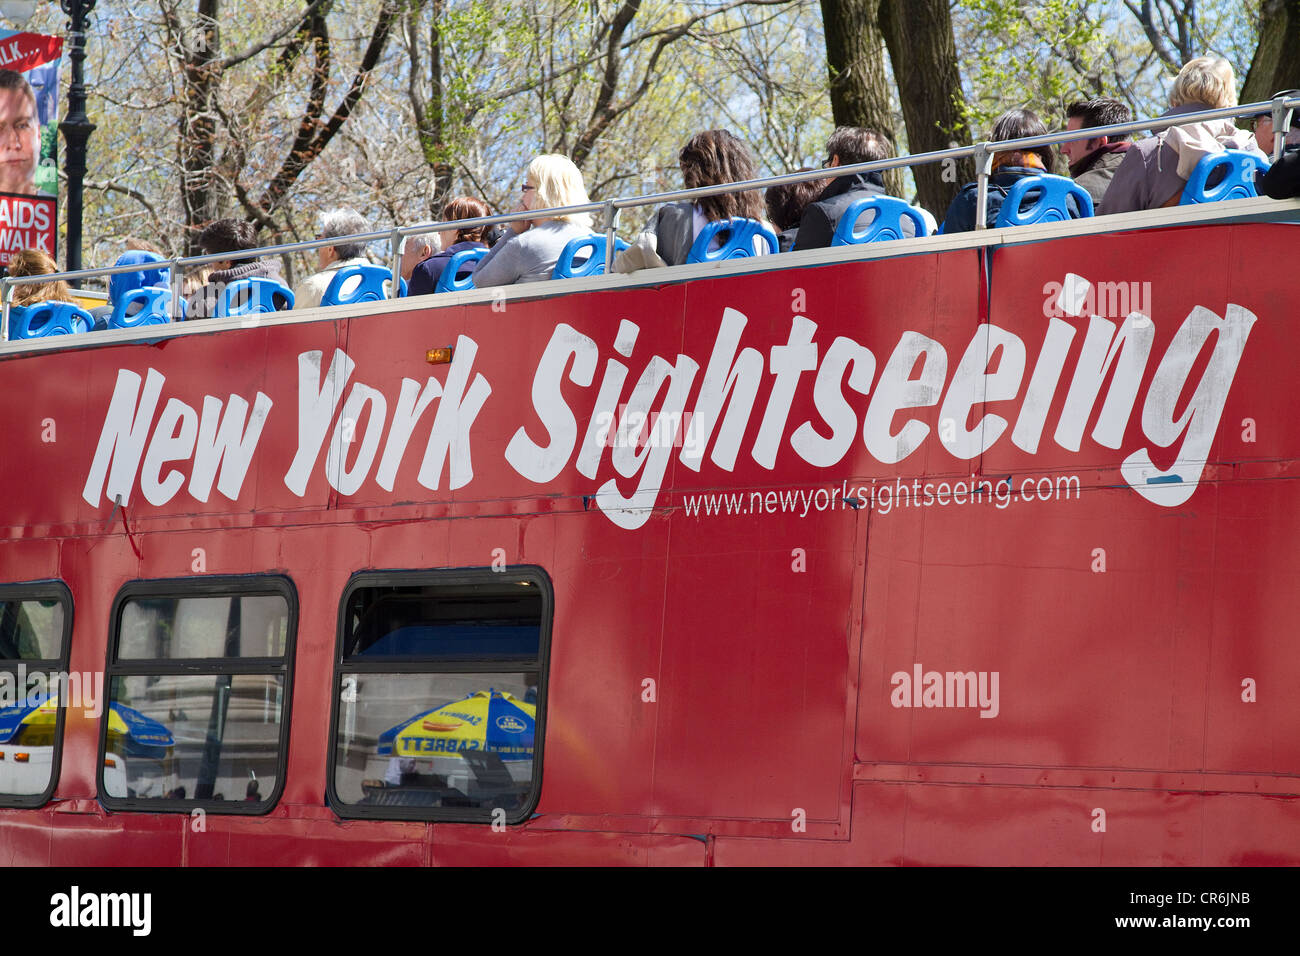 New York Touristen, Tourismus, Sightseeing-Bus in der Nähe von Central Park. Stockfoto